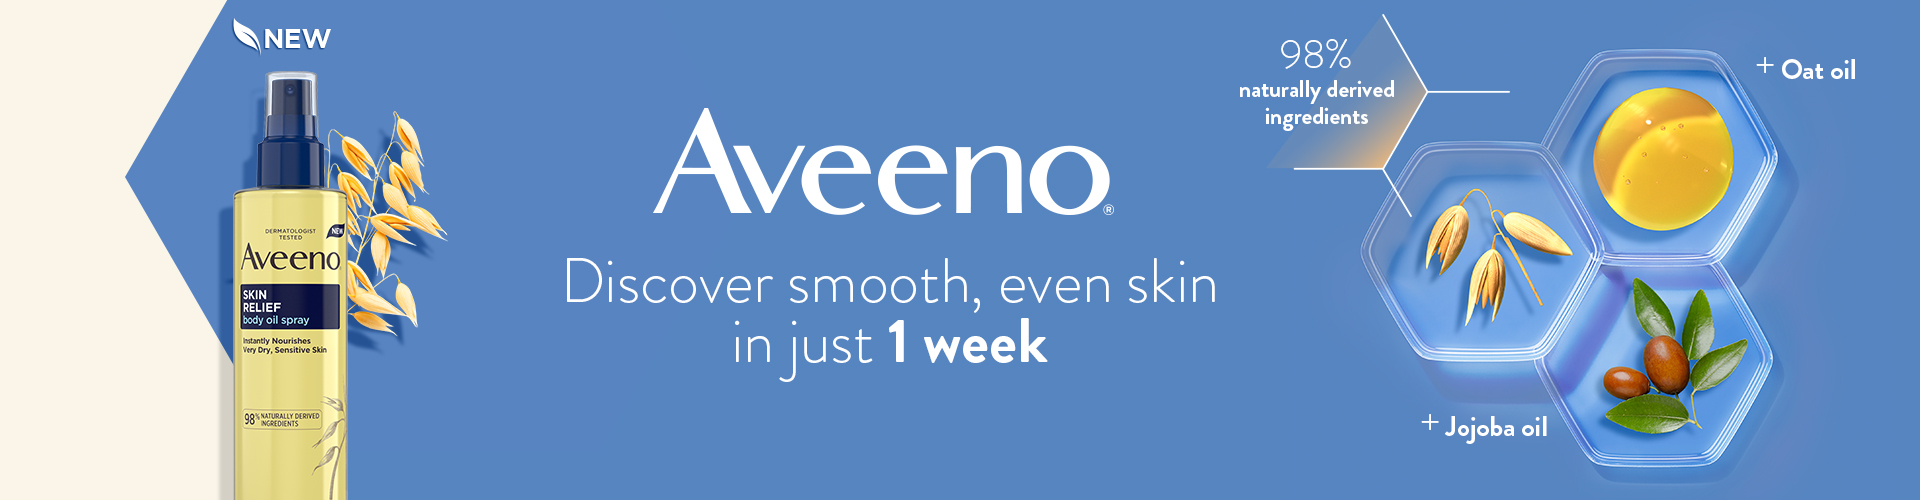 Aveeno skin banner